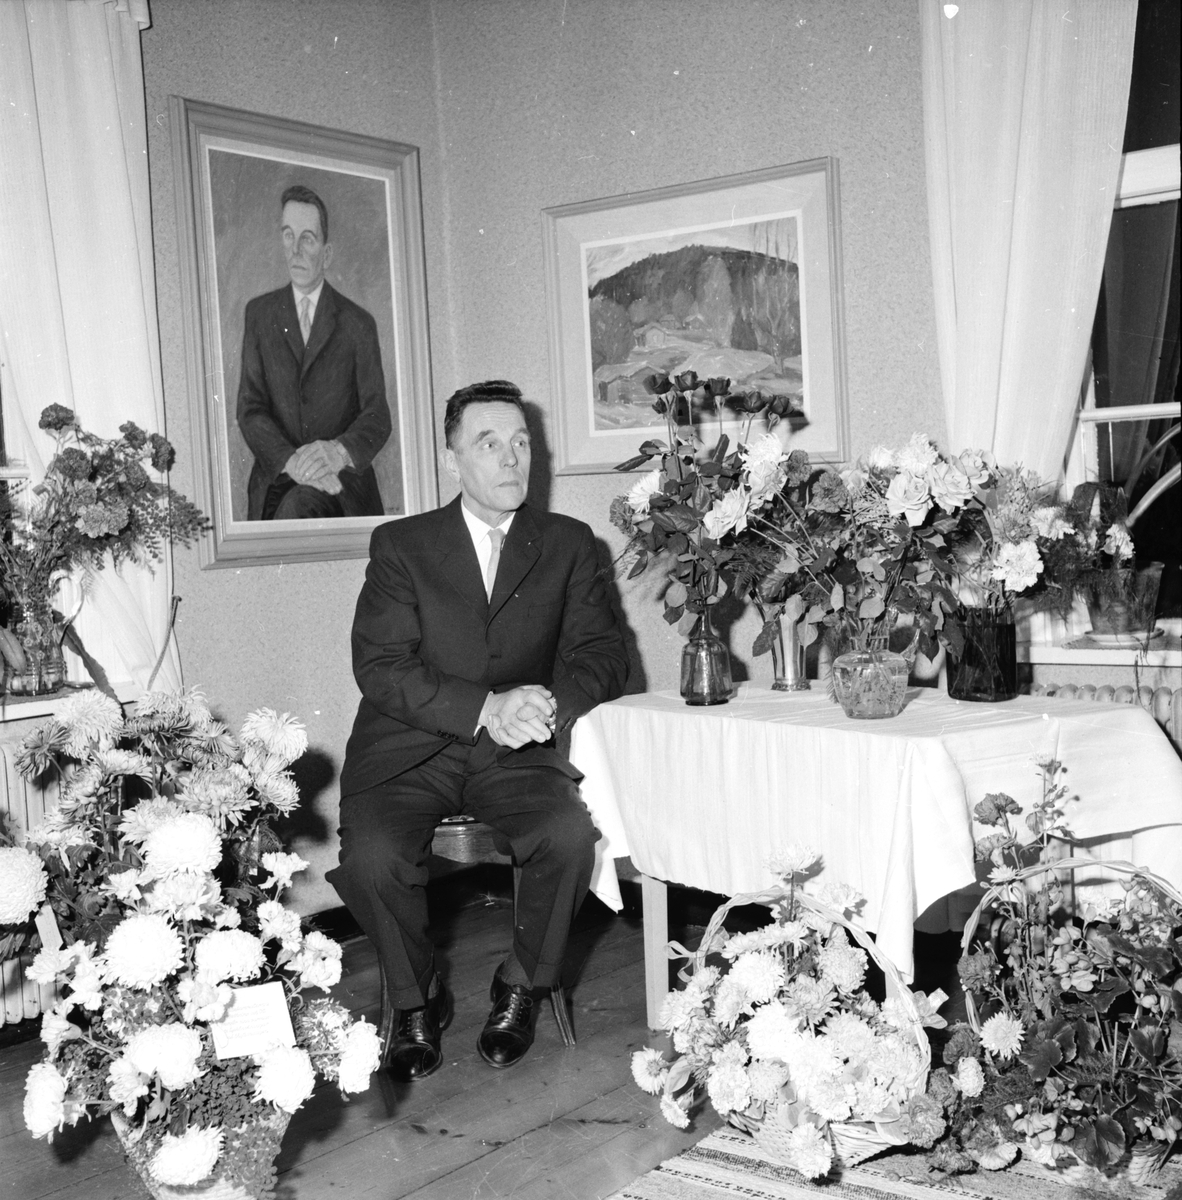 Svante i Söderala 60 år 1962,
Göte Nyman
